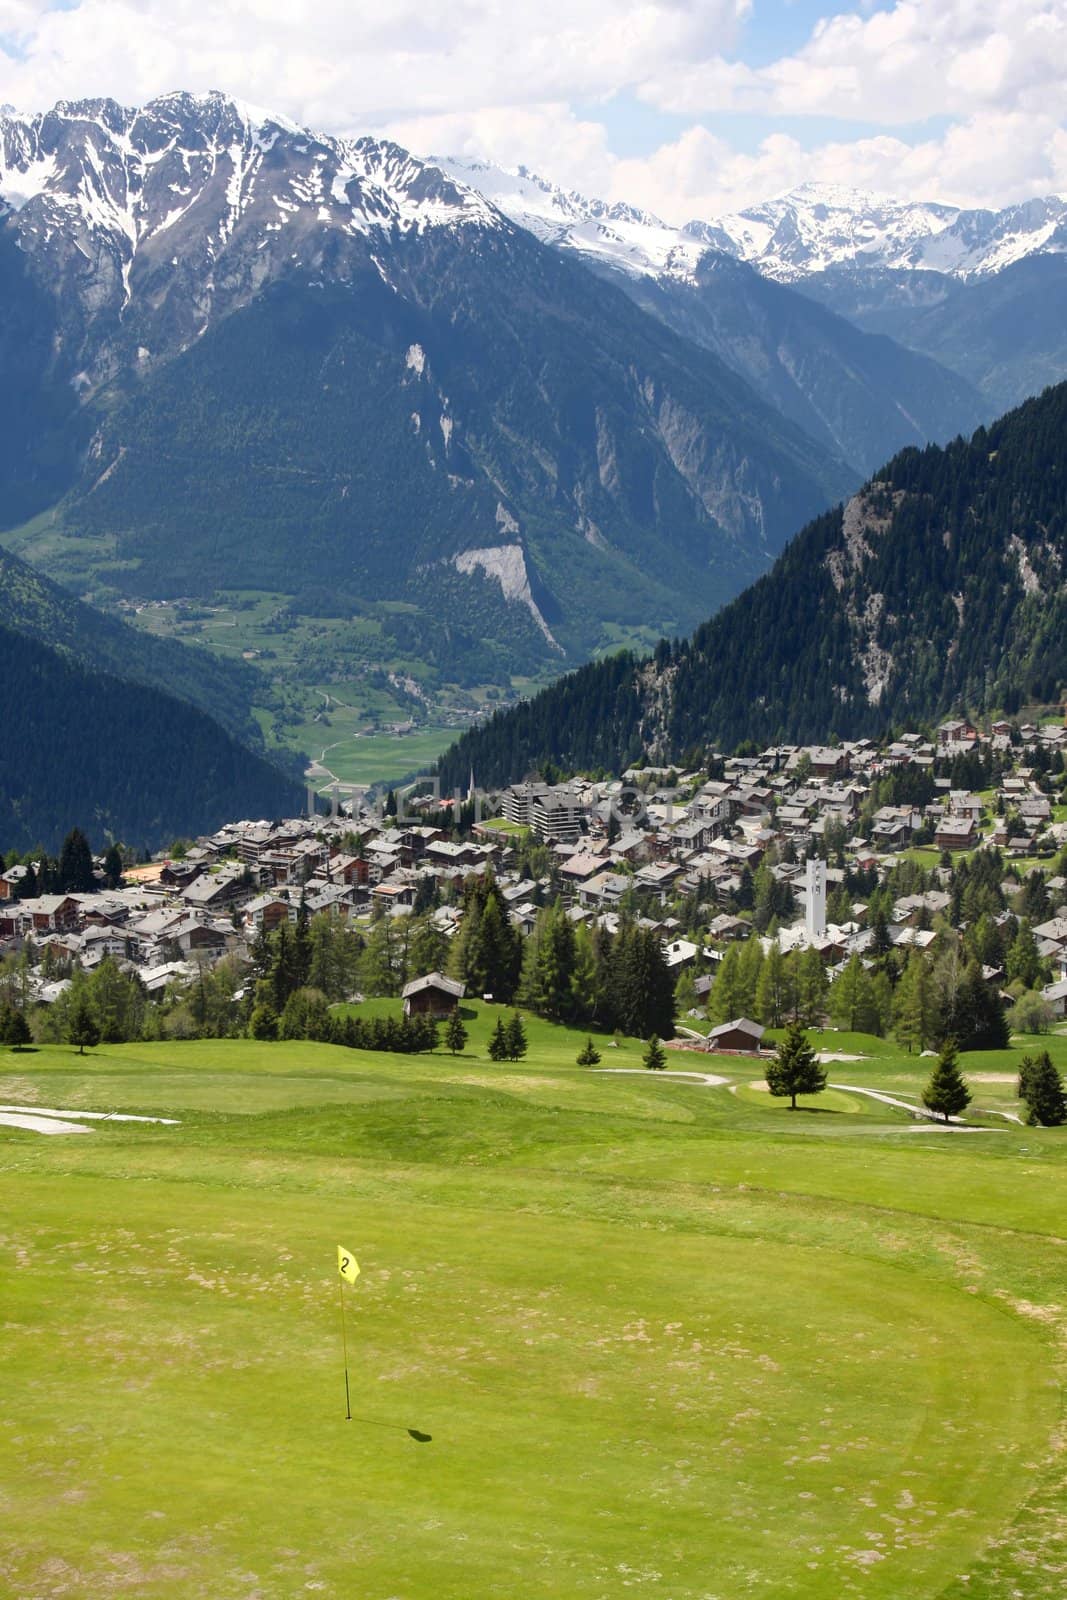 details of skiing resort, Swiss Alps, Verbier, Switzerland